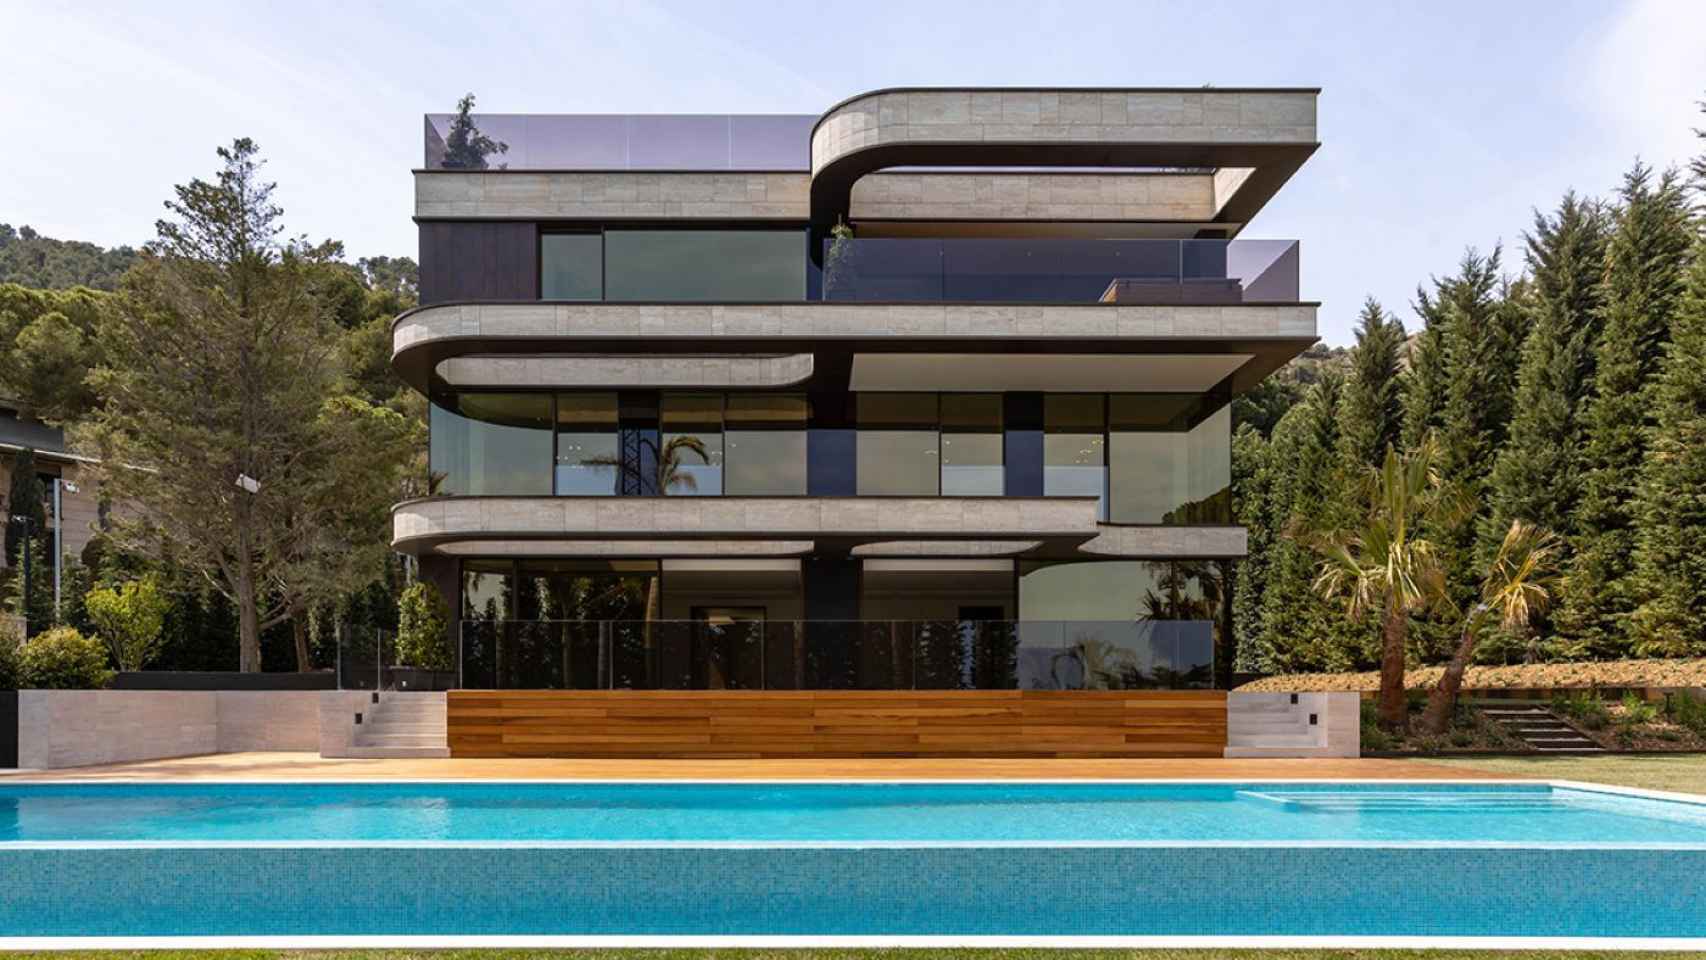 La casa en venta por 21'5 millones de euros